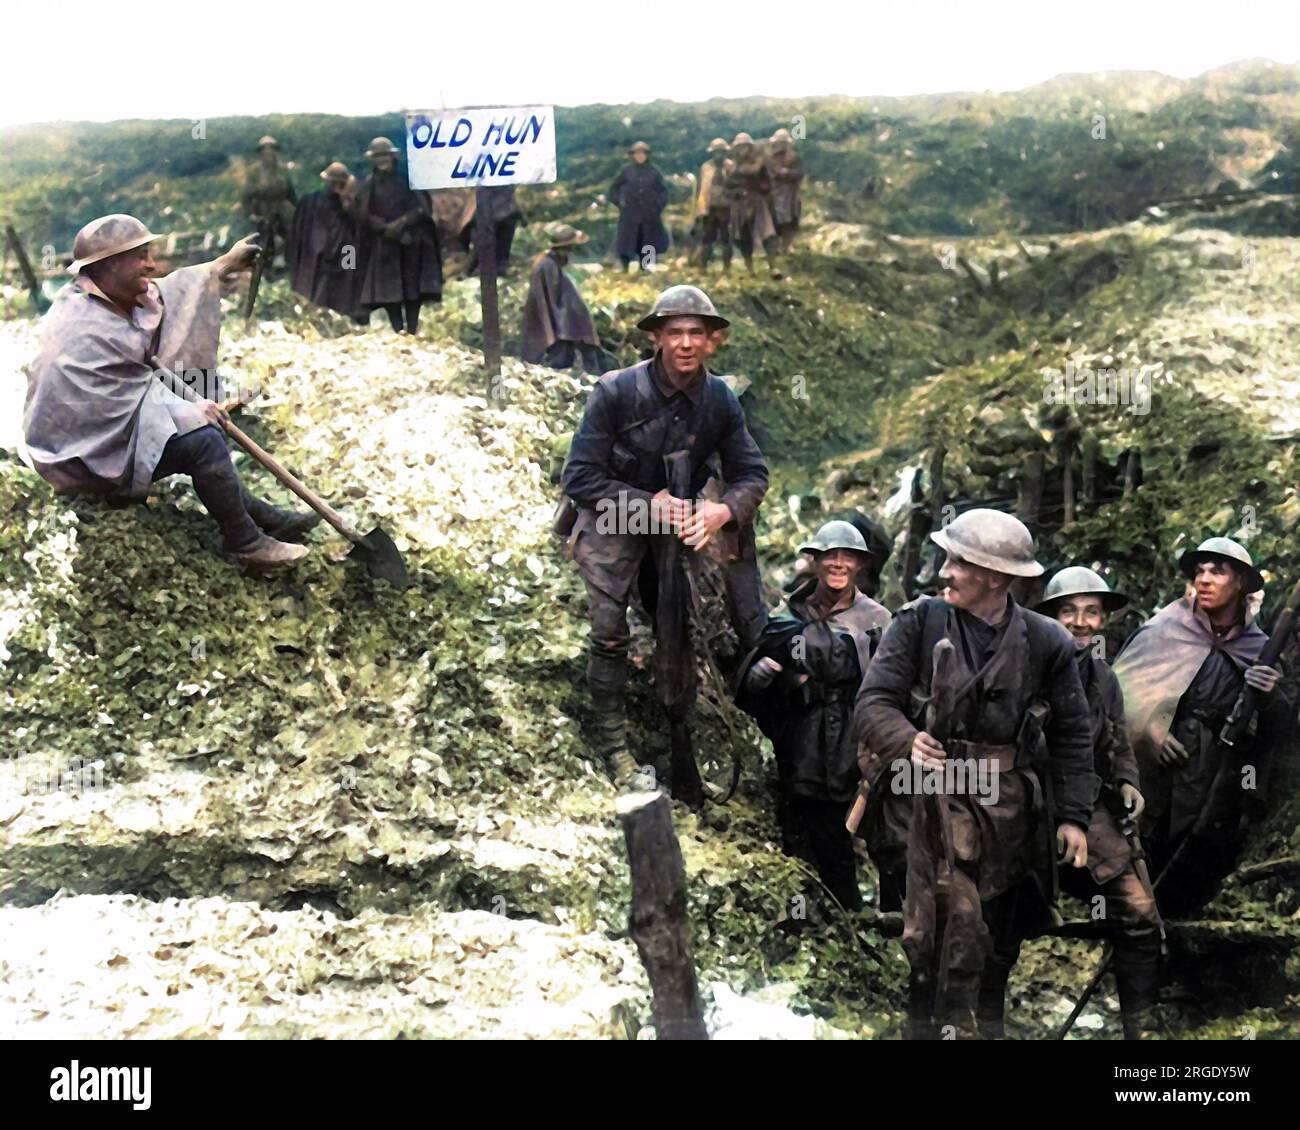 Britische Soldaten in einem neu gefangenen deutschen Graben während des Somme-Vormarsches an der Westfront in Frankreich im Ersten Weltkrieg. Auf dem Schild steht der alte Hunne Line. Stockfoto